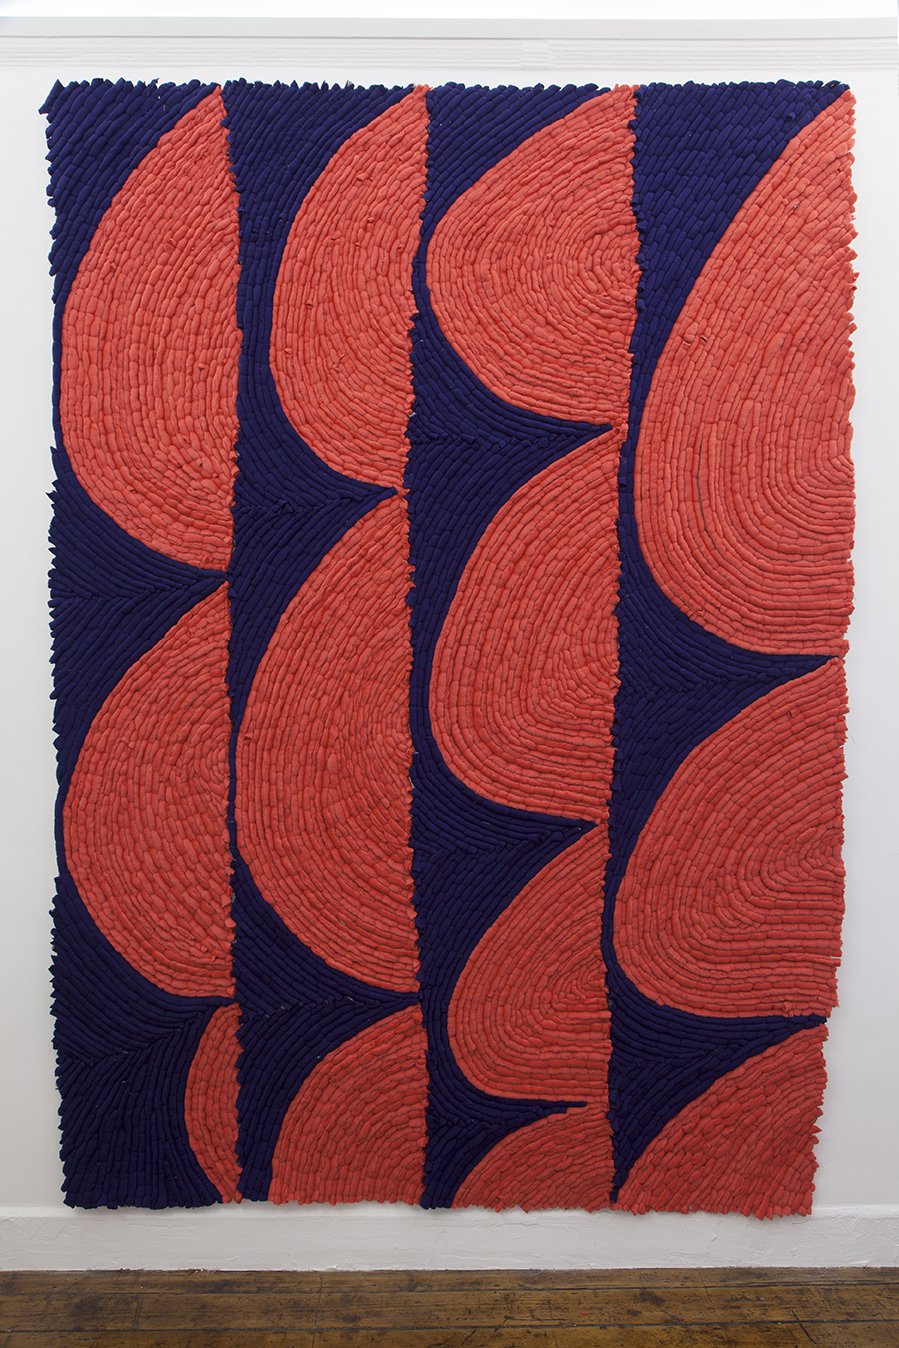 Enrico David, Untitled, wool on canvas, 283 x 202 cm, 2014–2015